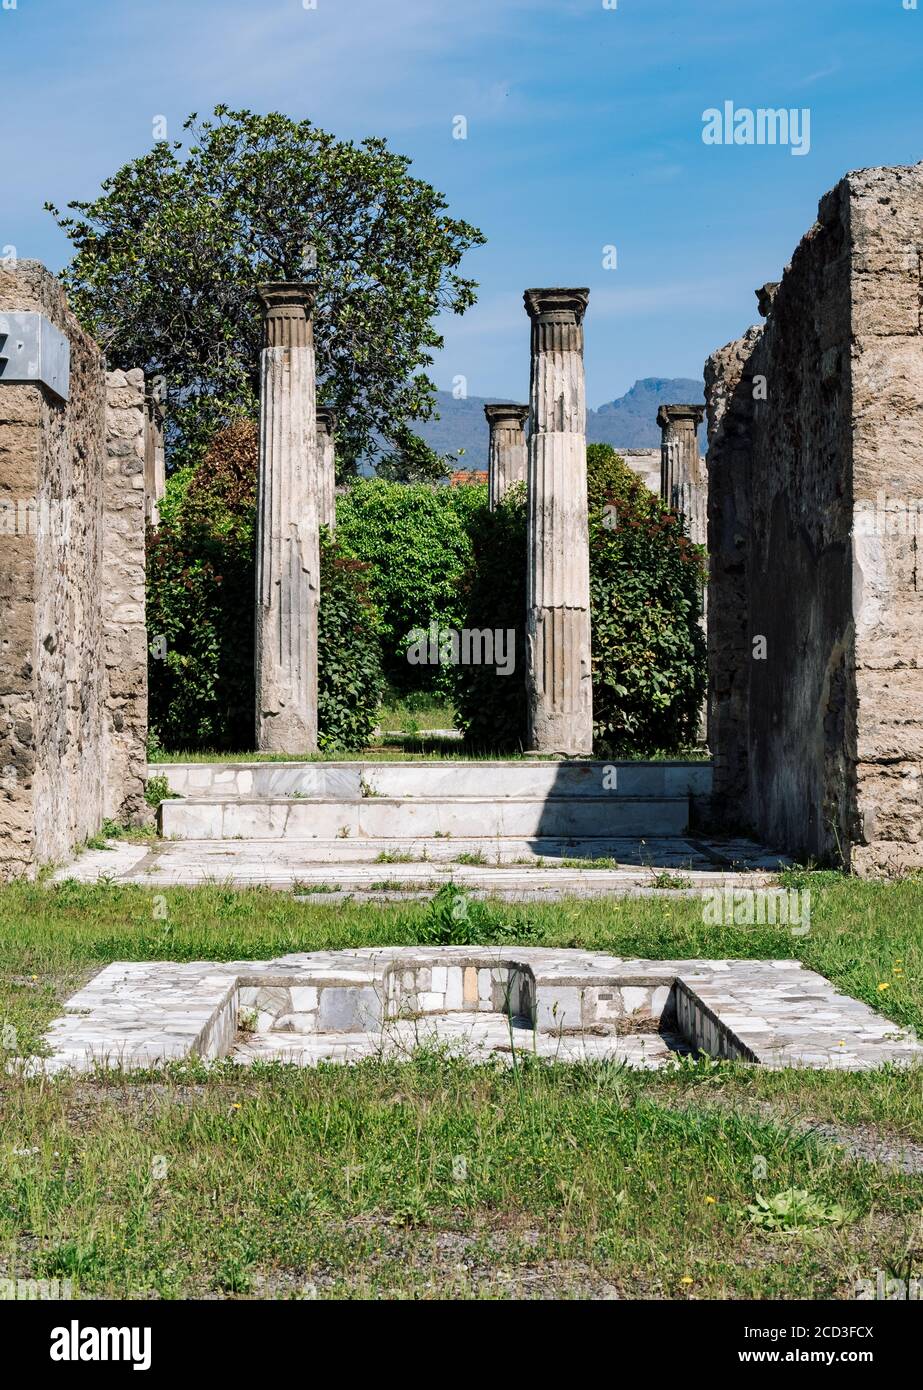 Ruinen eines antiken römischen Hauses in Pompeji, zerstört durch den Ausbruch des Vesuv im Jahre 79 v. Chr., Italien Stockfoto